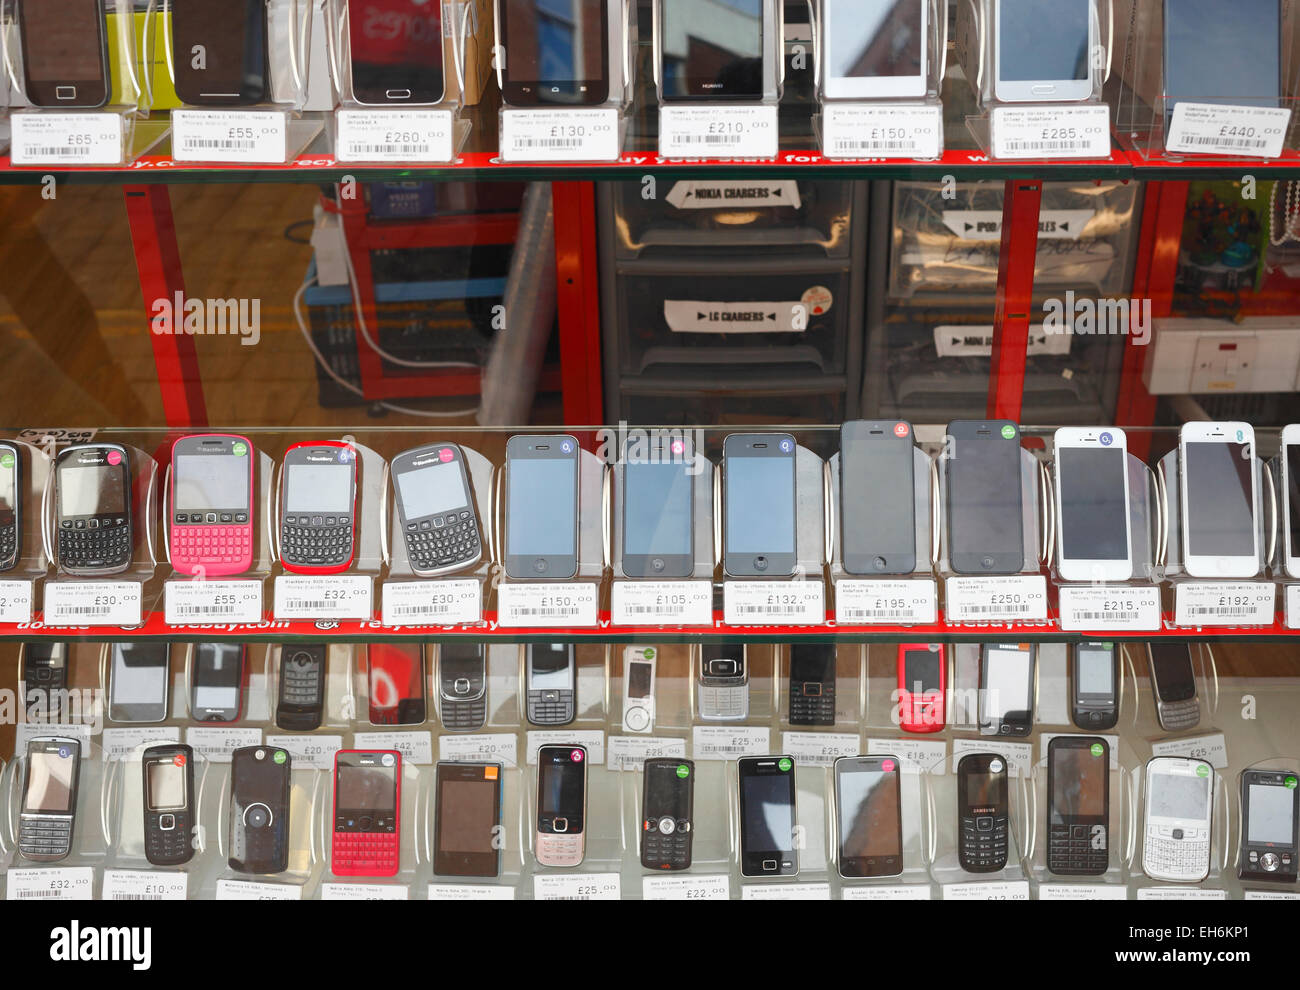 Teléfonos móviles y accesorios de segunda mano baratos en Vecindario